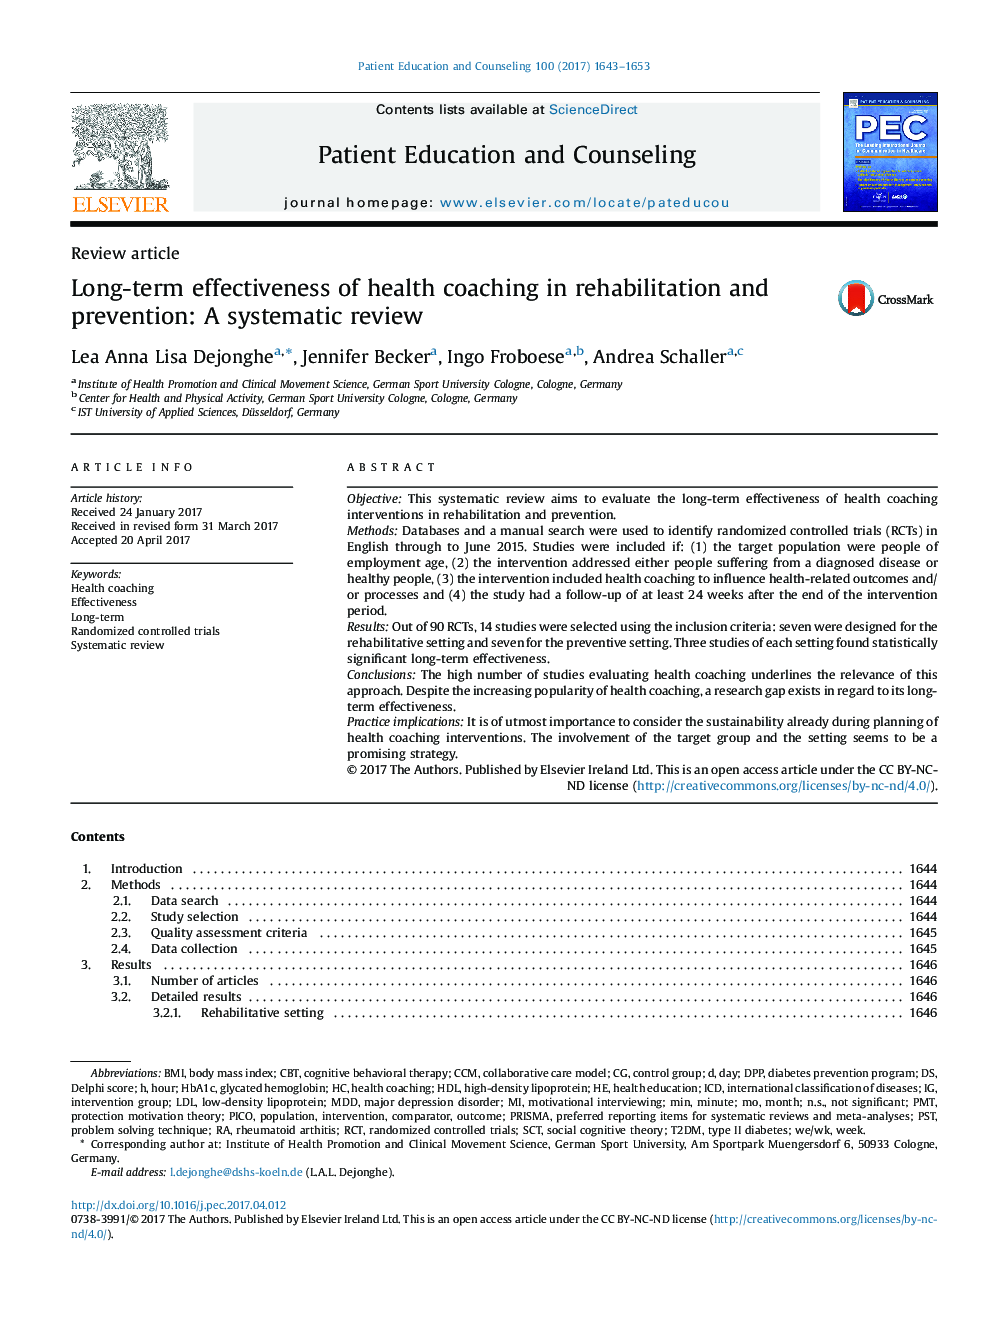 اثربخشی درازمدت مربیگری بهداشت در توانبخشی و پیشگیری: بررسی سیستماتیک 